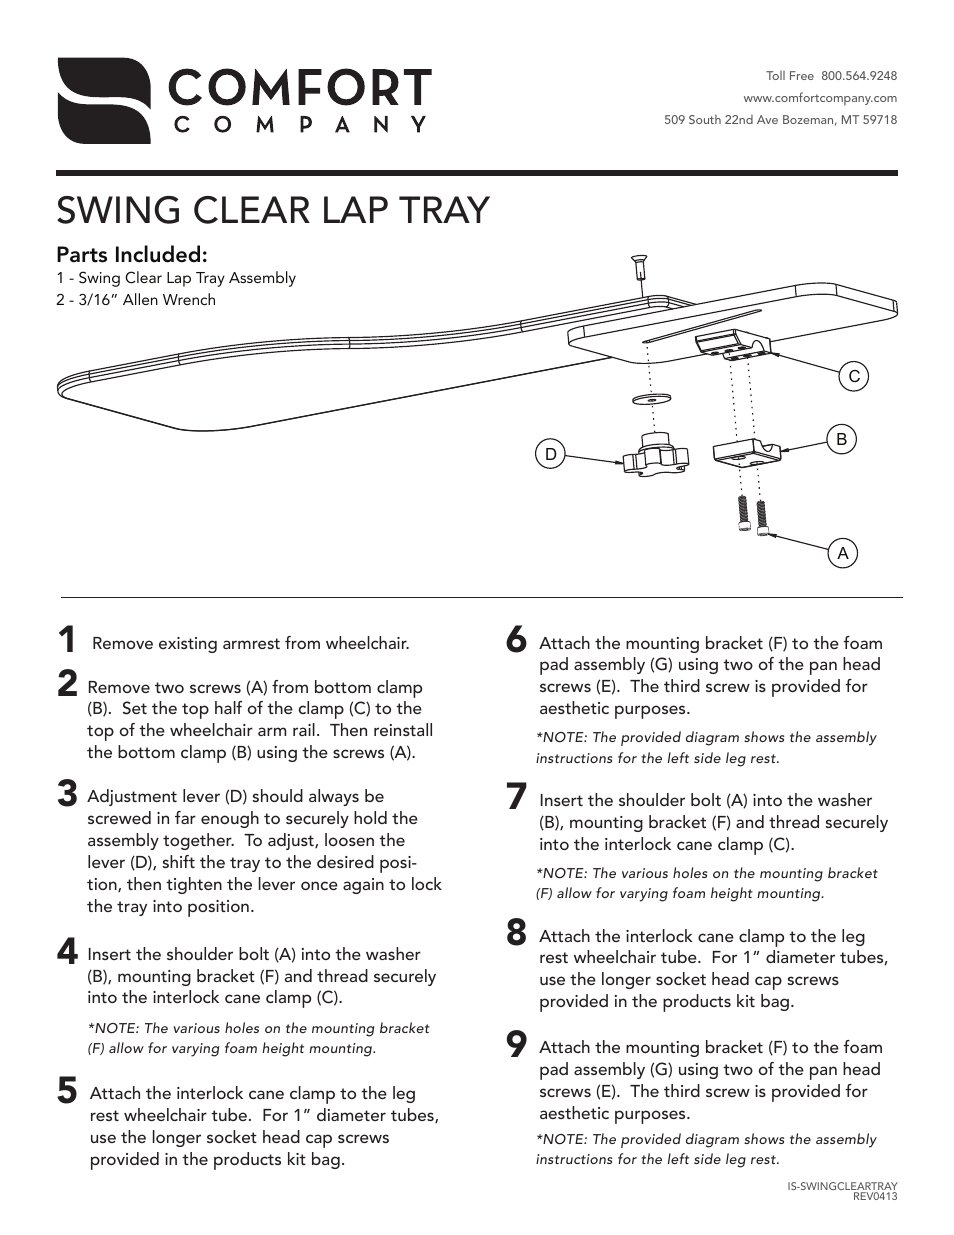 Swing-Clear Lap Tray